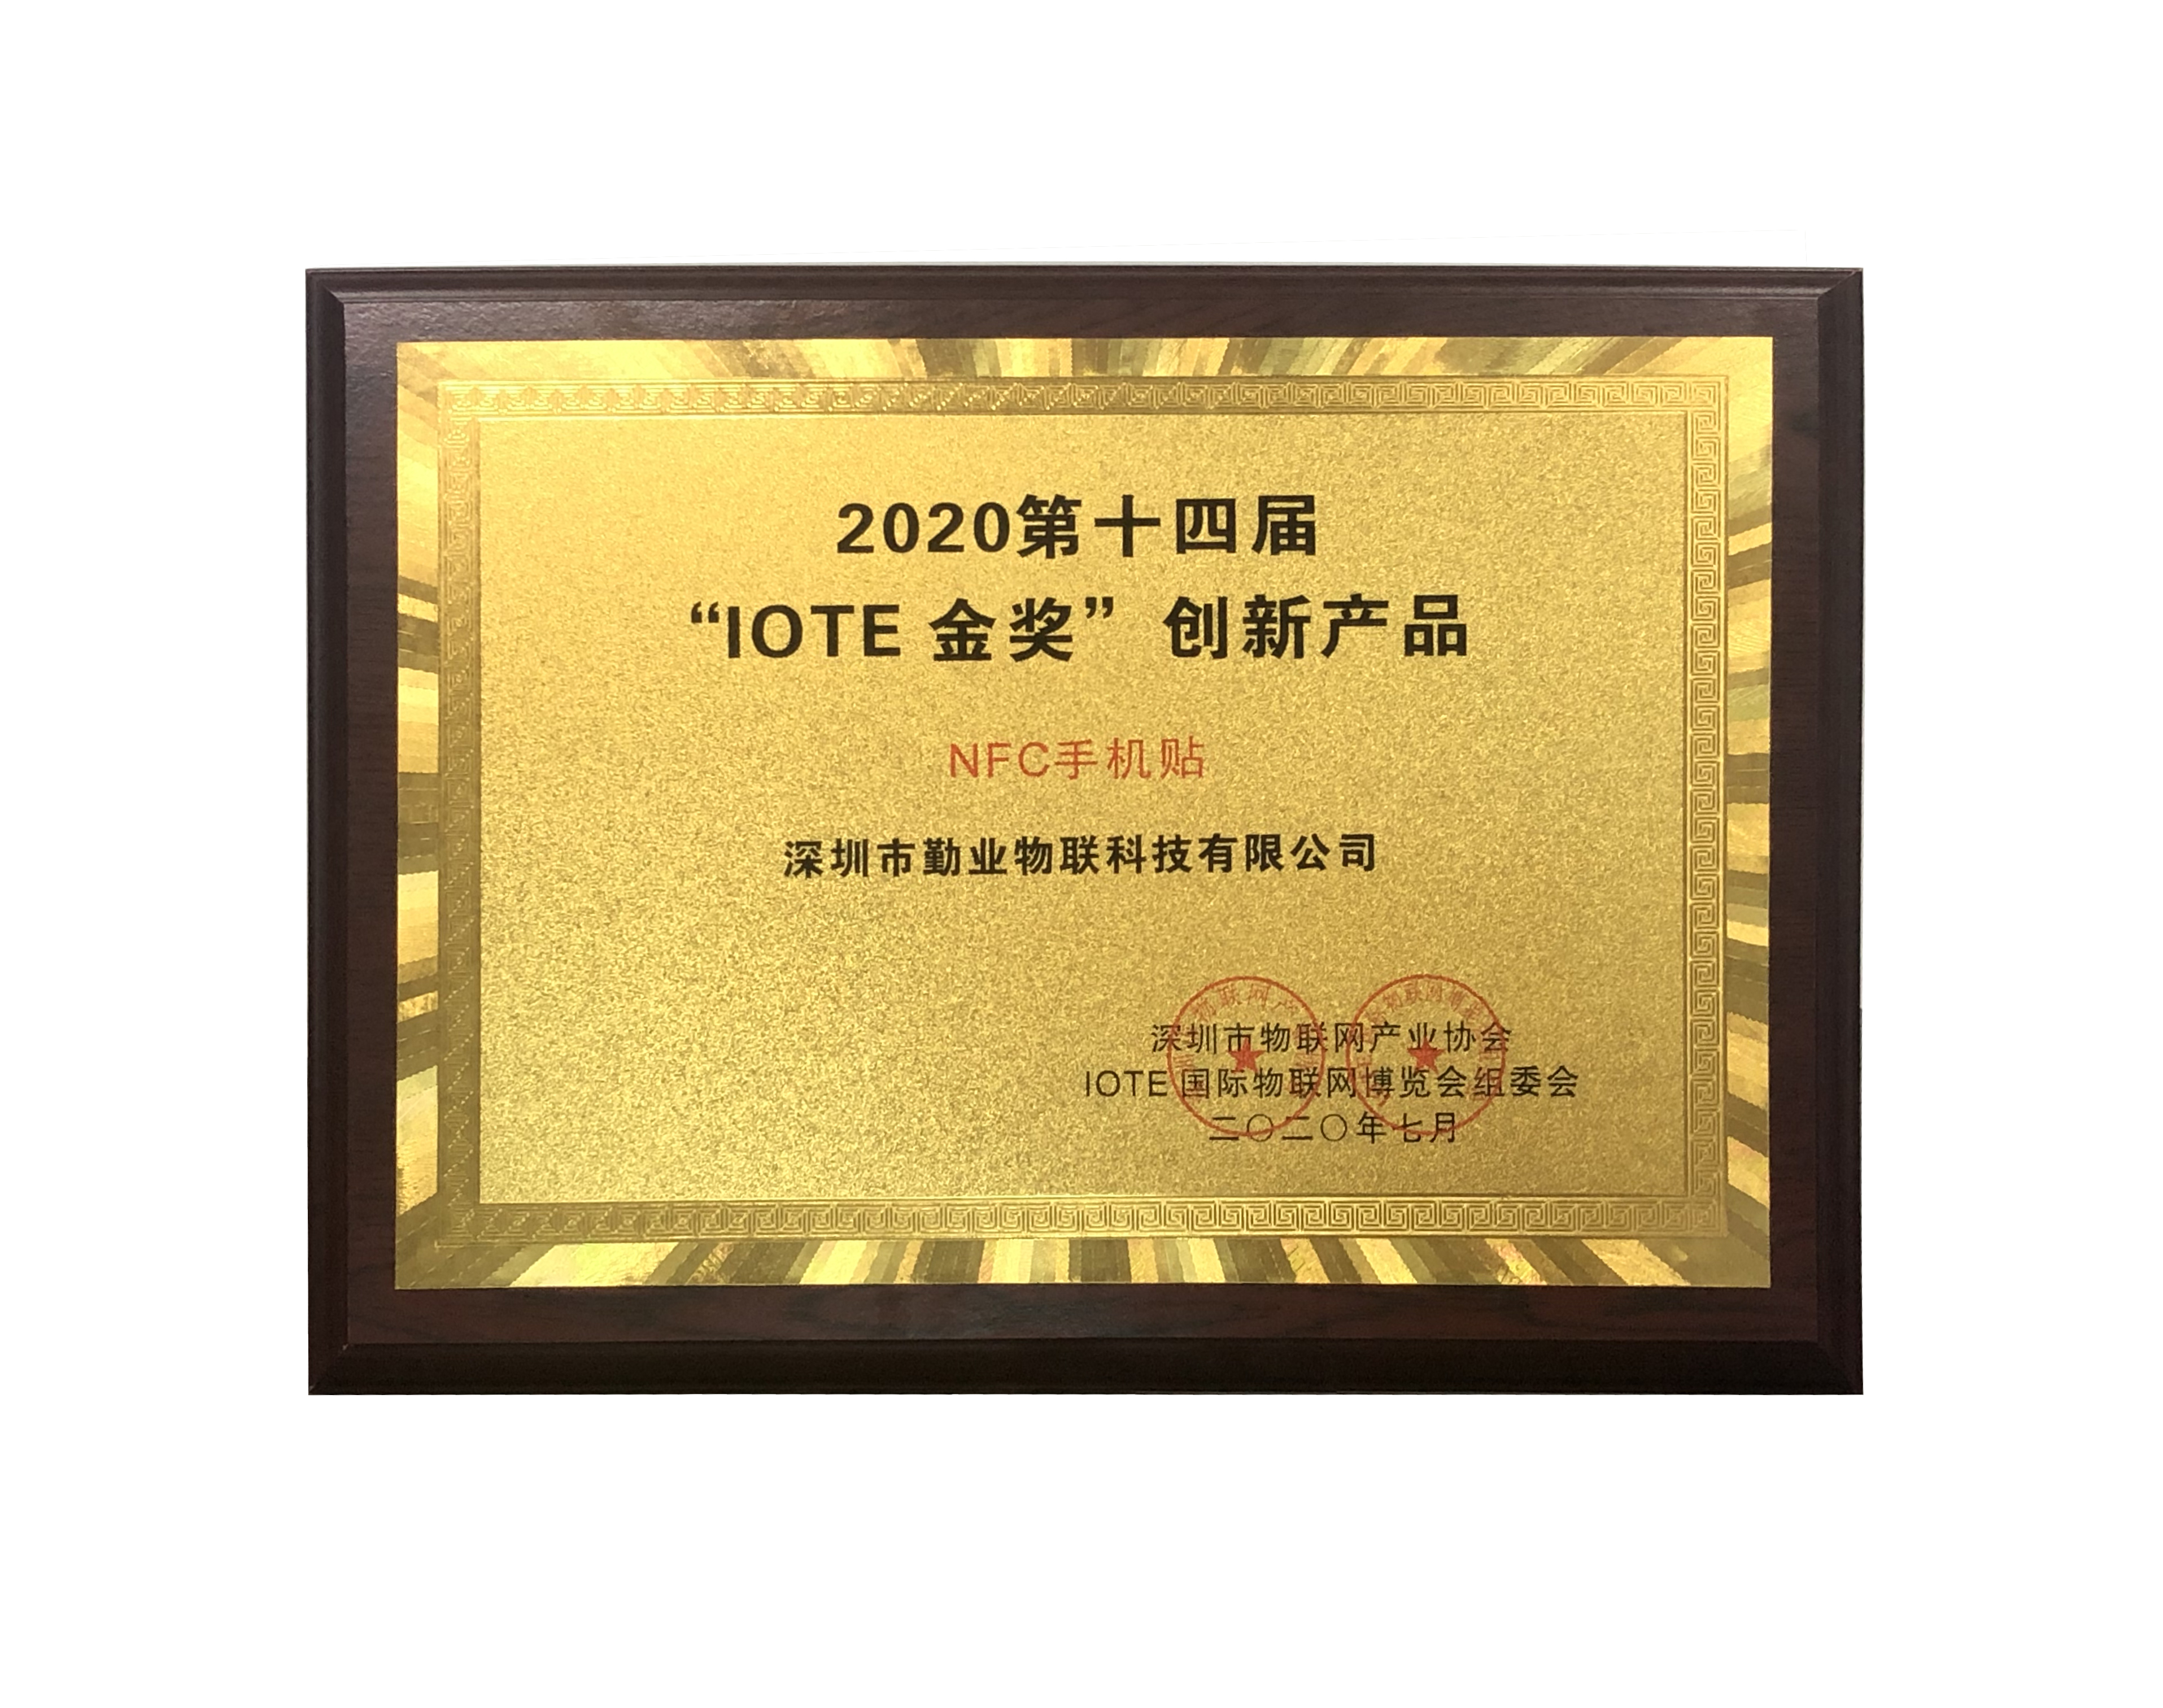 2020第十四届“IOTE 金奖”创新产品